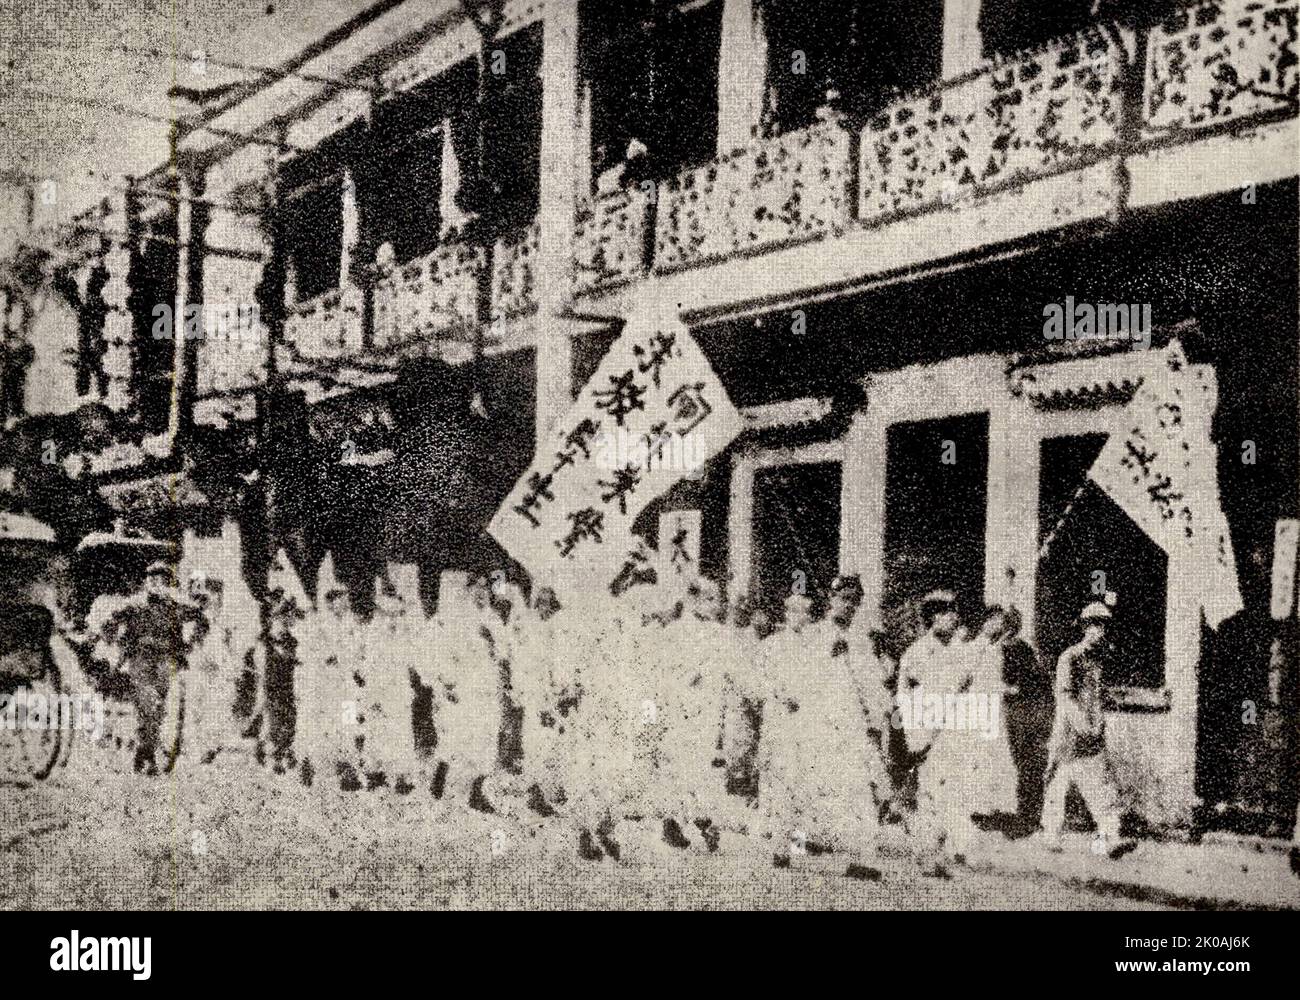 Gruppi di protesta nelle aree commerciali durante il movimento del quarto maggio. Il movimento del quarto maggio è stato un movimento cinese anti-imperialista, culturale e politico, nato dalle proteste studentesche a Pechino il 4 maggio 1919. Foto Stock